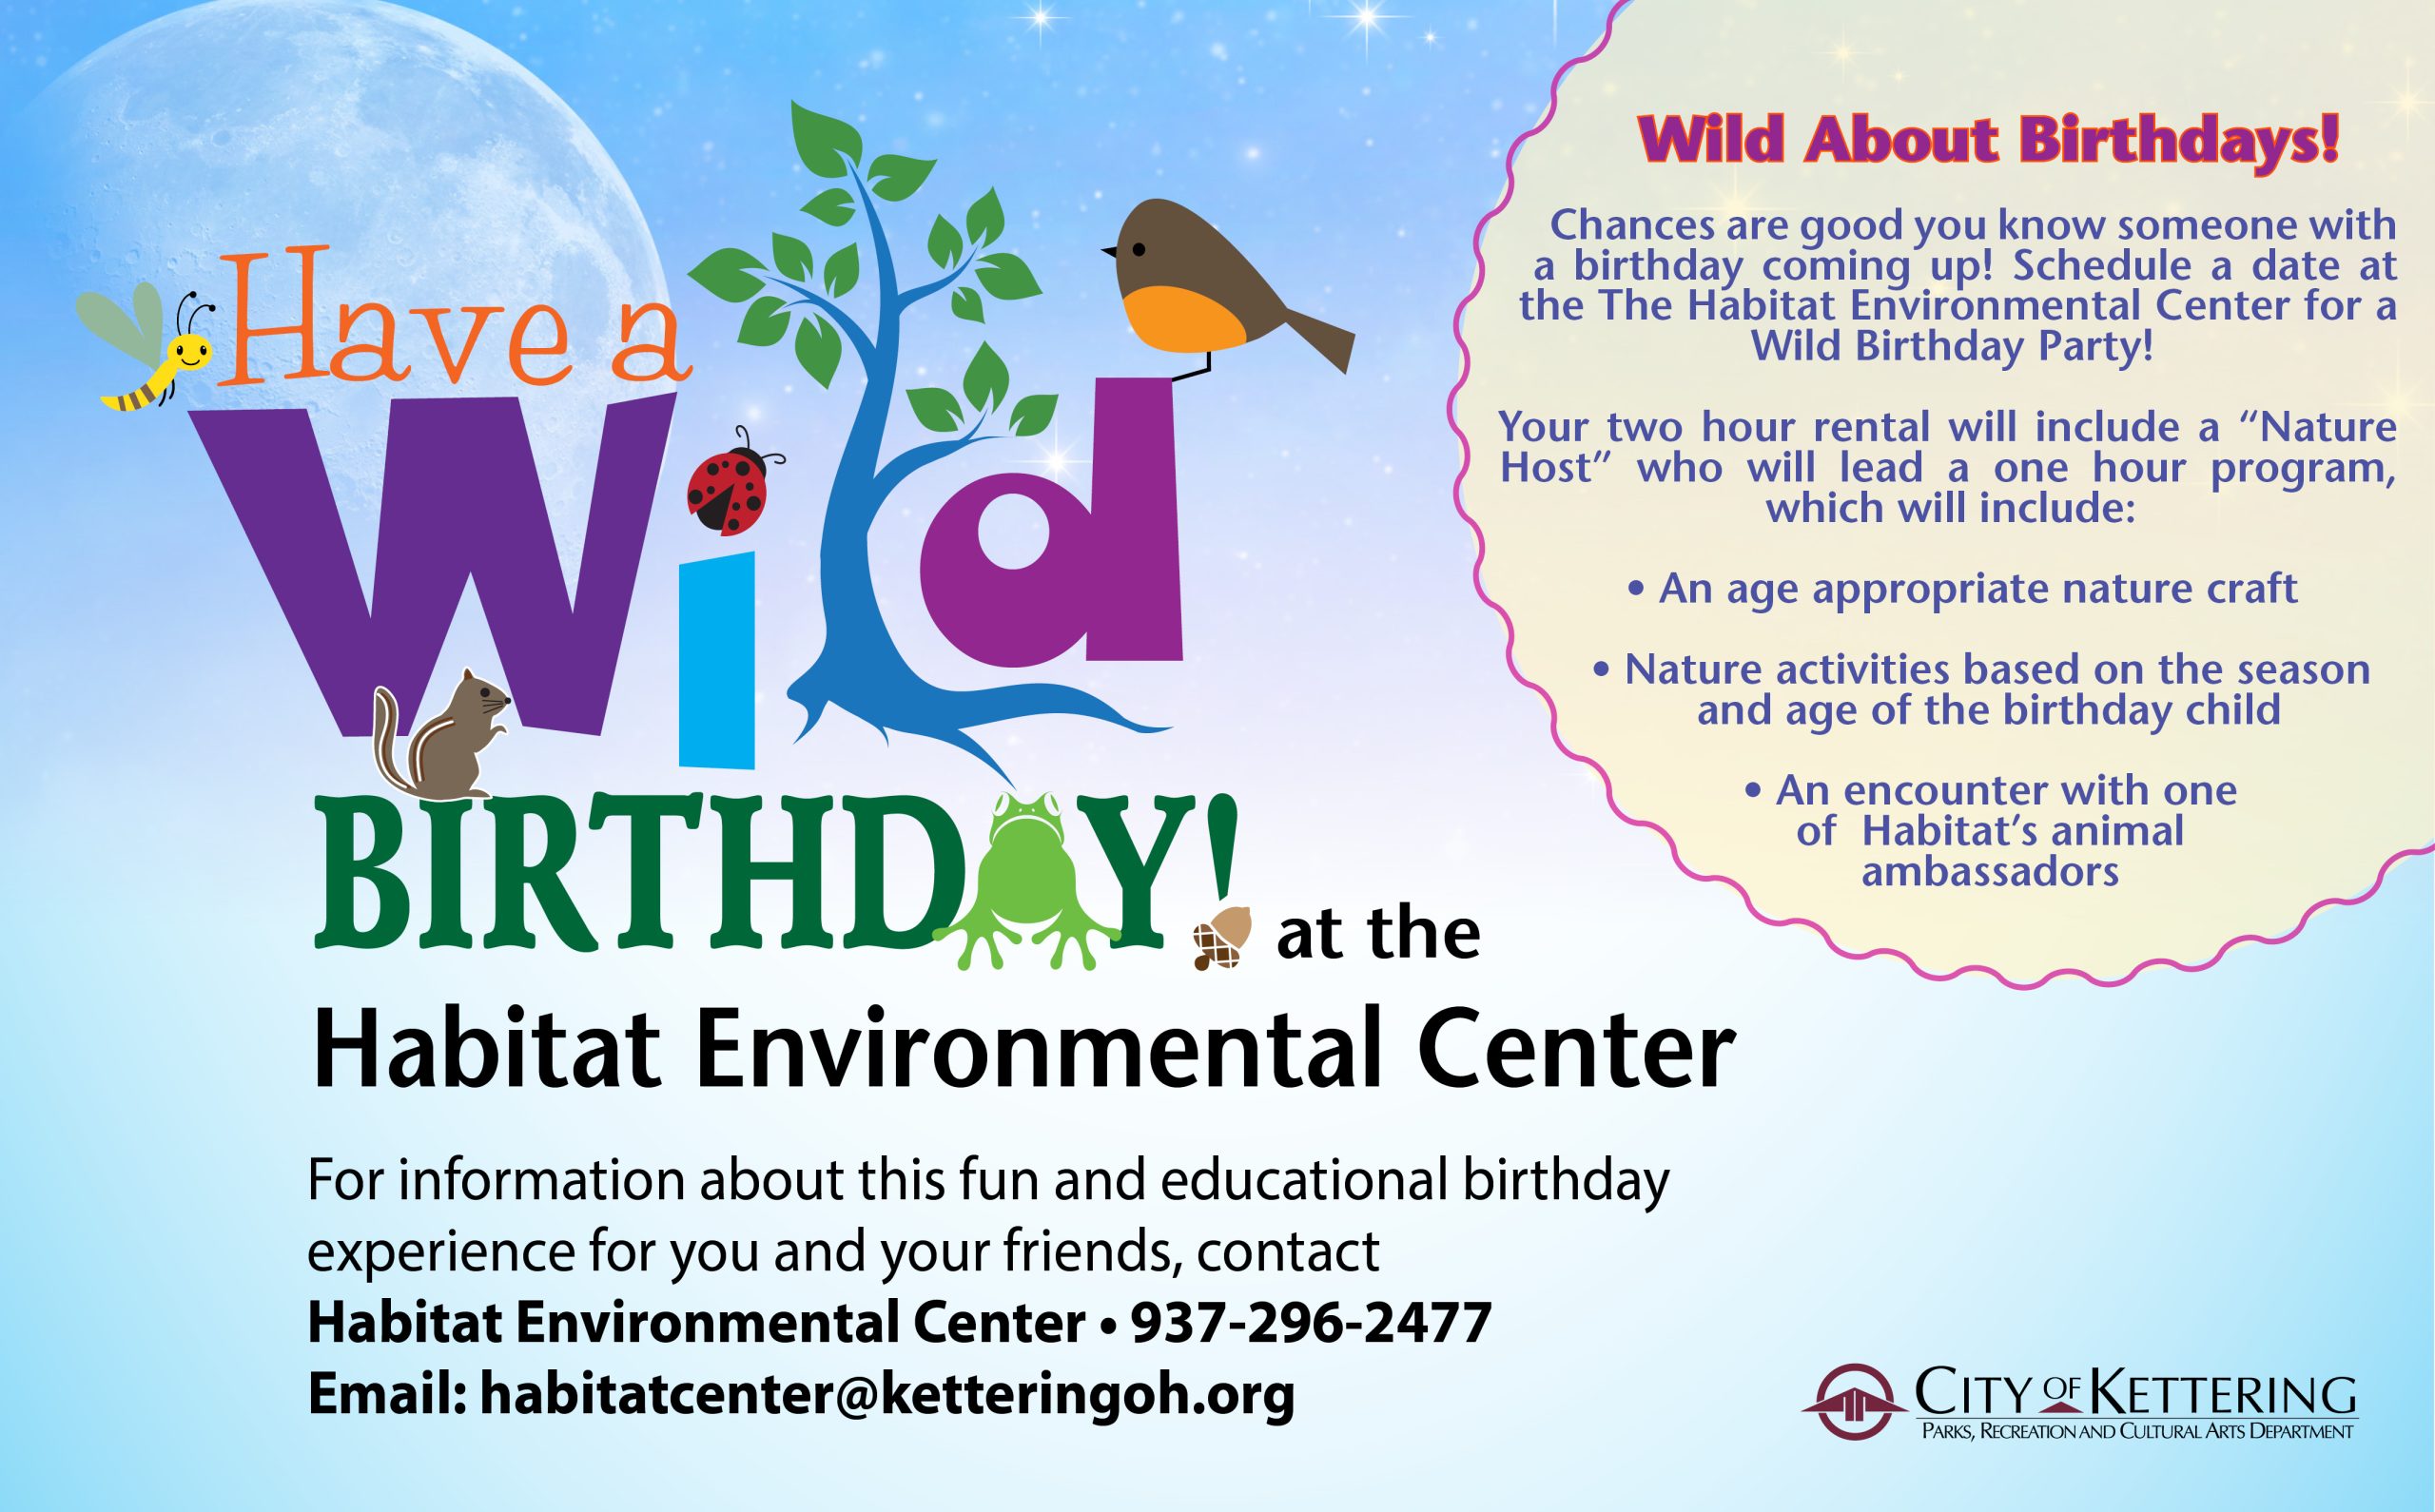 Habitat Environmental Center Birthdays - Play Kettering